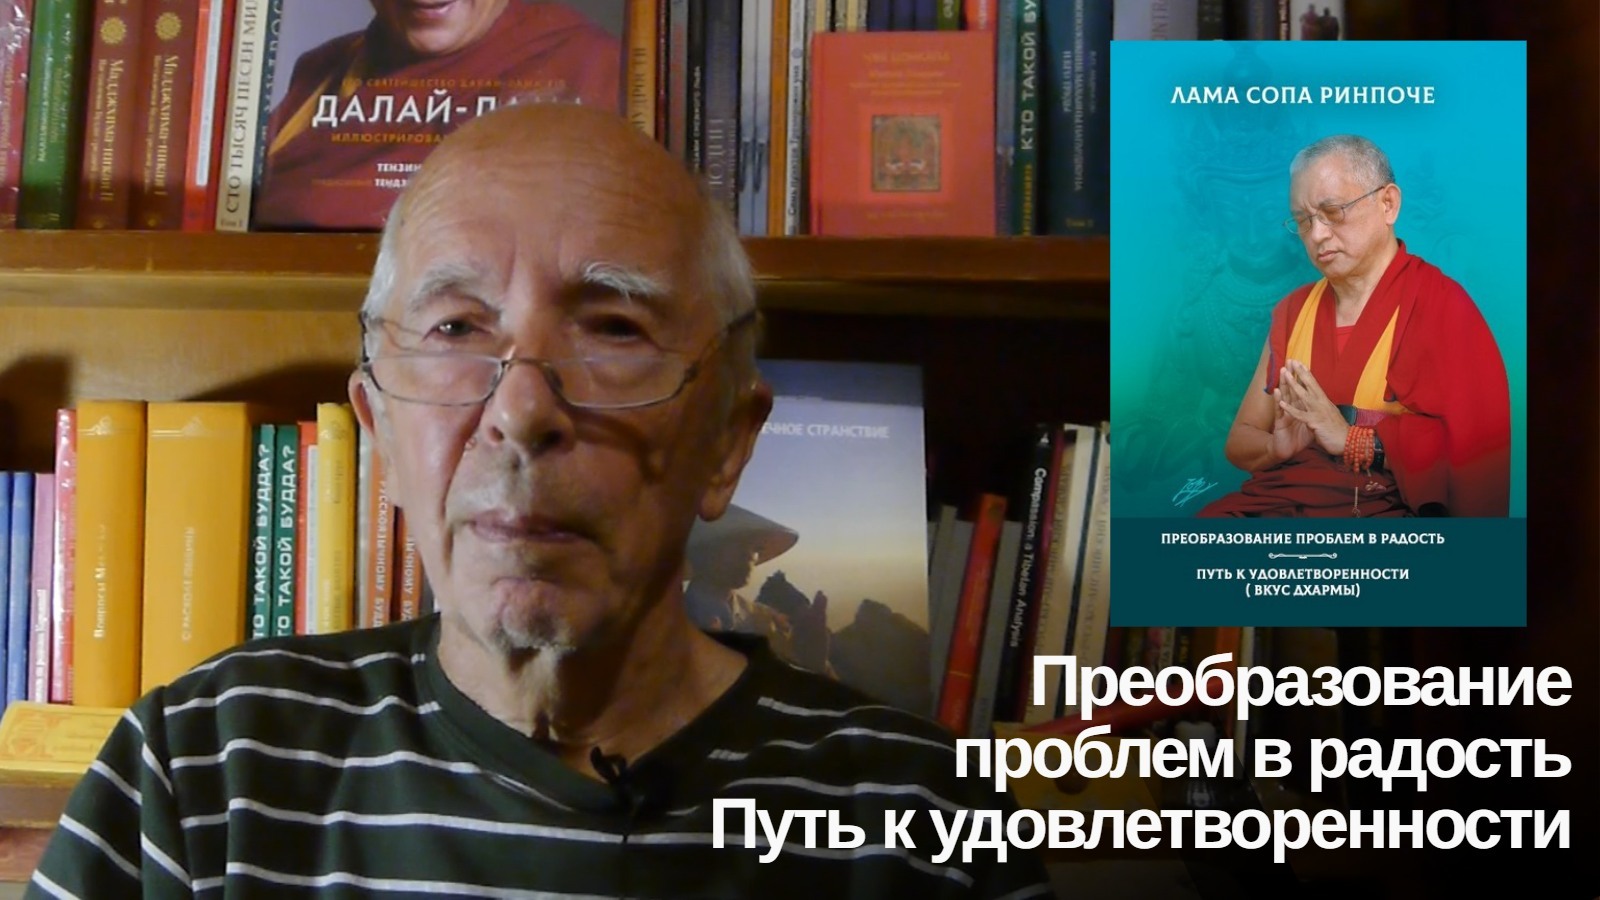 Андрей Терентьев рассказал о книге ламы Сопы Ринпоче